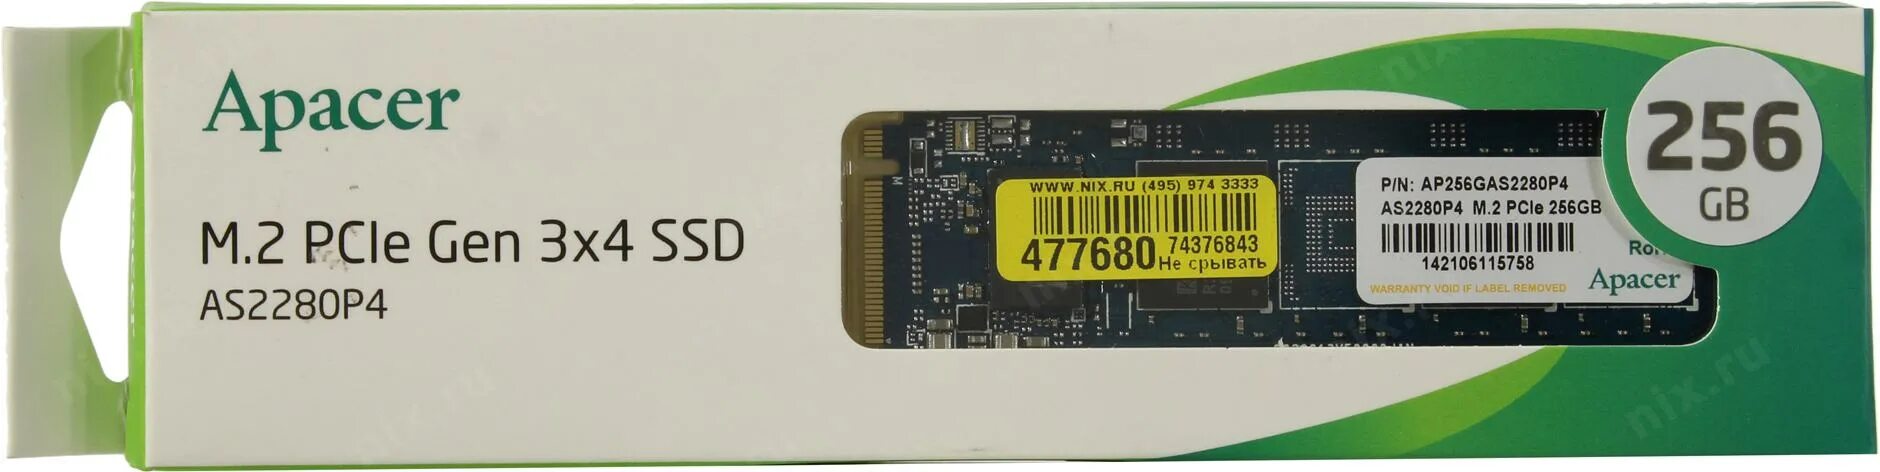 Накопитель ssd apacer as2280p4. 256 ГБ SSD M.2 накопитель Apacer as2280p4. 256 ГБ SSD M.2 накопитель Apacer as2280p4 [ap256gas2280p4-1]. Apacer m.2 as2280p4 512. Твердотельный накопитель Apacer m1 4gb.